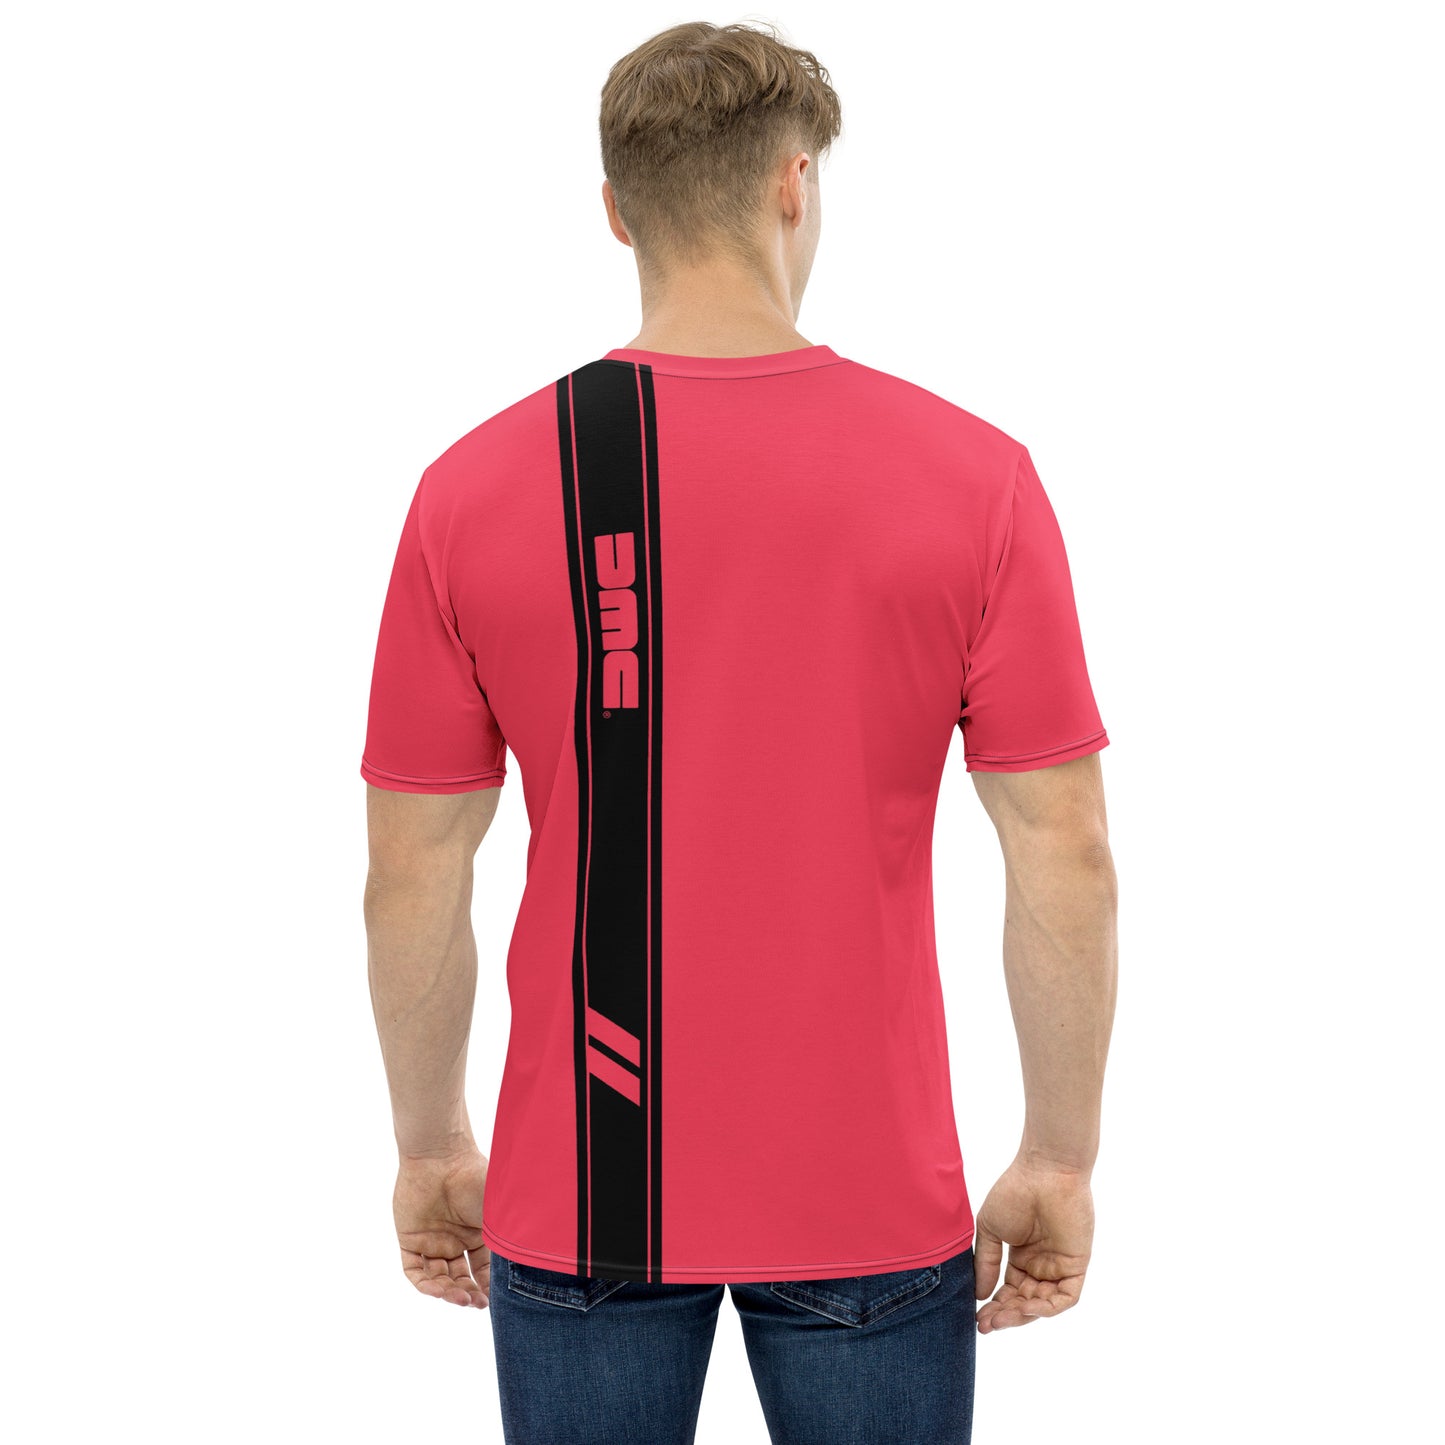 DeLorean Stripe T-Shirt (Pink)